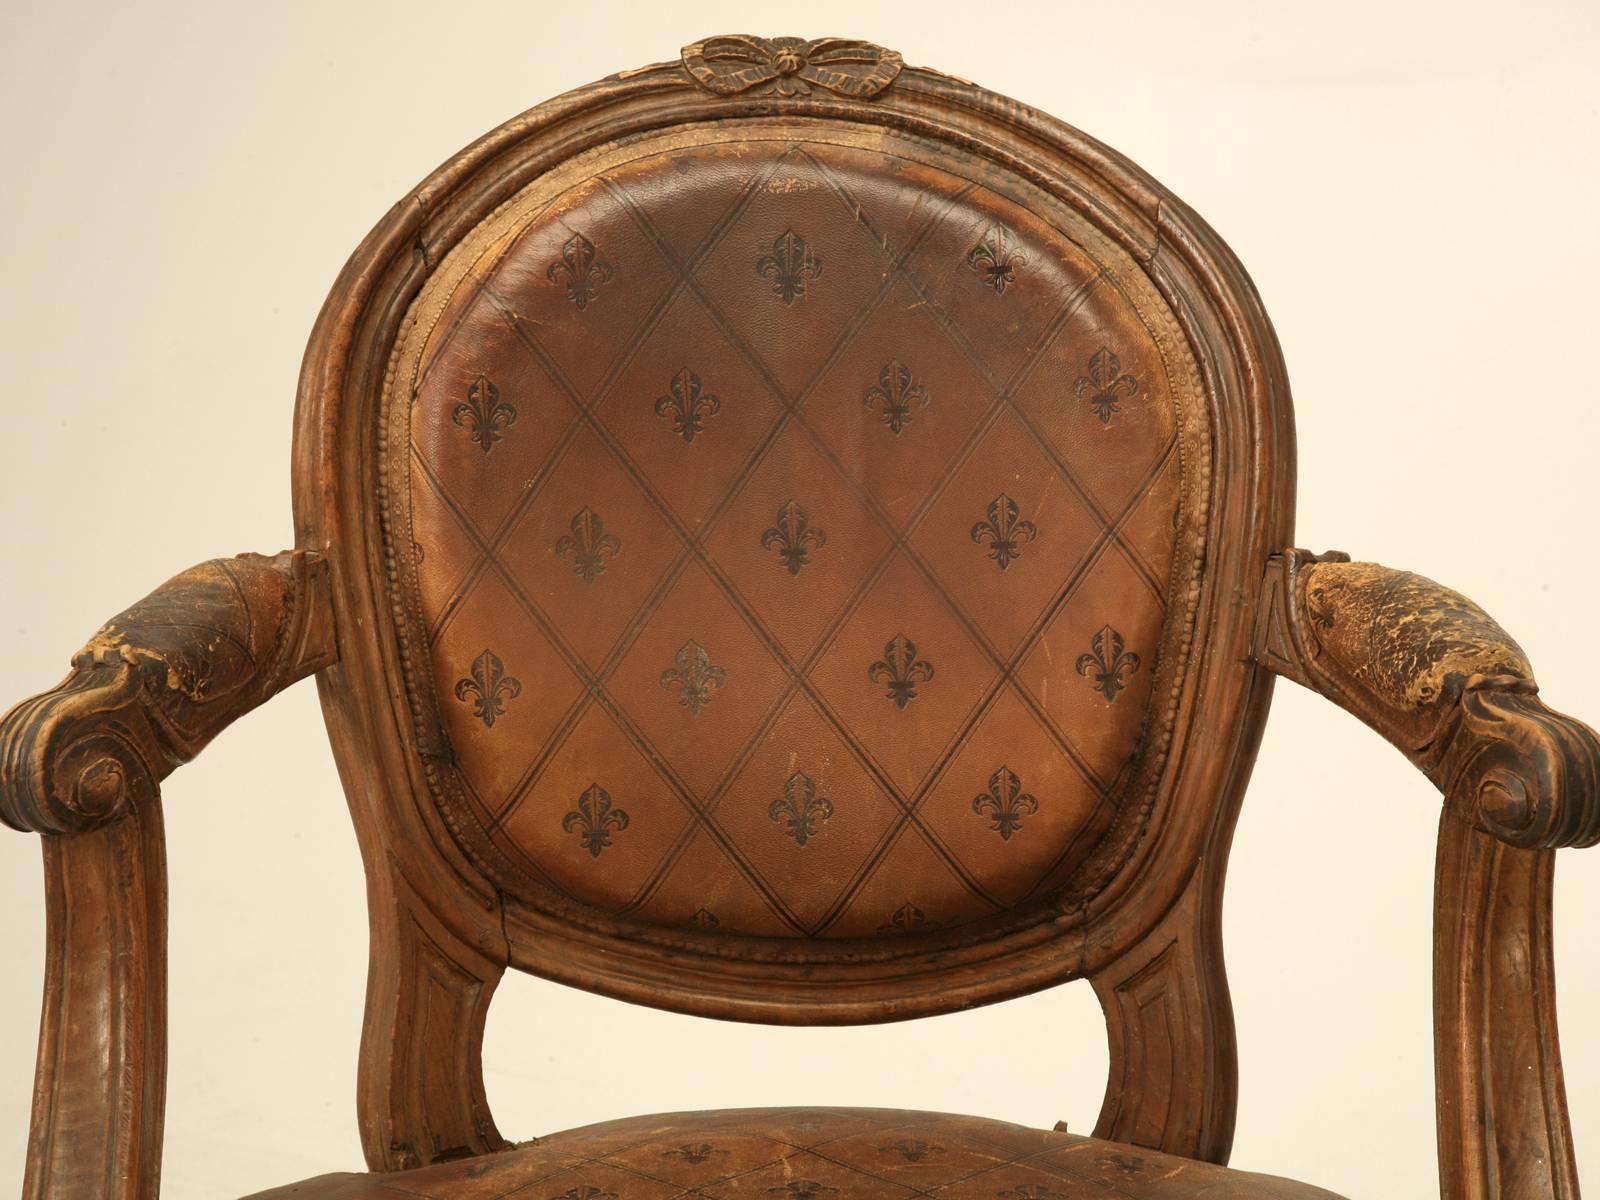 Großartiges Paar sehr alter französischer Louis XVI Sessel, in ihrer Original Lederpolsterung. Obwohl wir eine hauseigene Polsterei haben, habe ich der Versuchung widerstanden, das ungewöhnlich gemusterte Leder auszutauschen, und es ist möglich, das